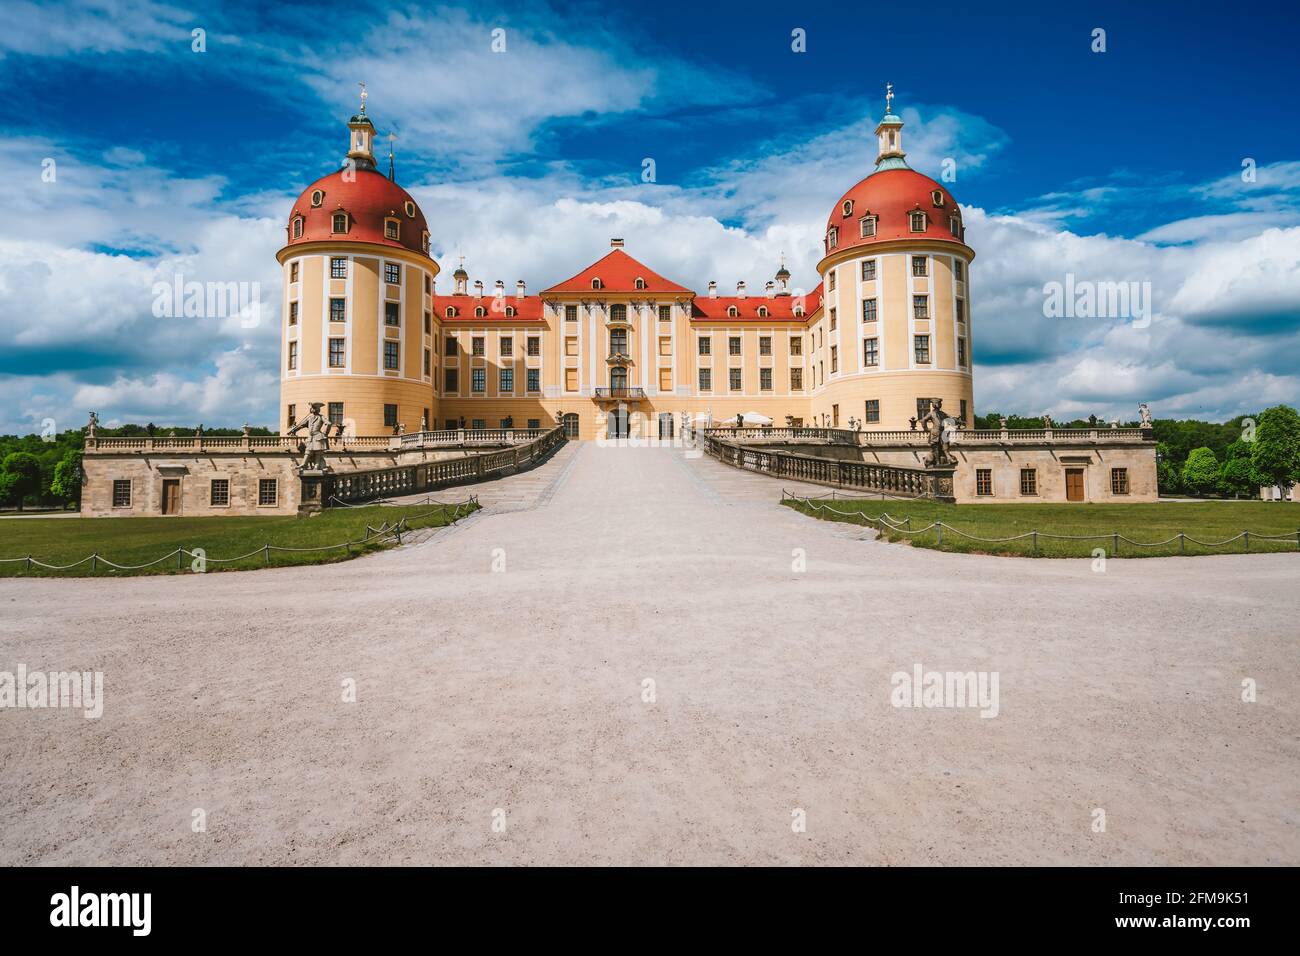 Schloss Moritzburg befindet sich in Deutschland, Sachsen Region, in der Nähe von Dresden. Schöner Frühlingstag mit blauem Himmel und weißen Wolken. Umgeben von einem schönen Park. Stockfoto